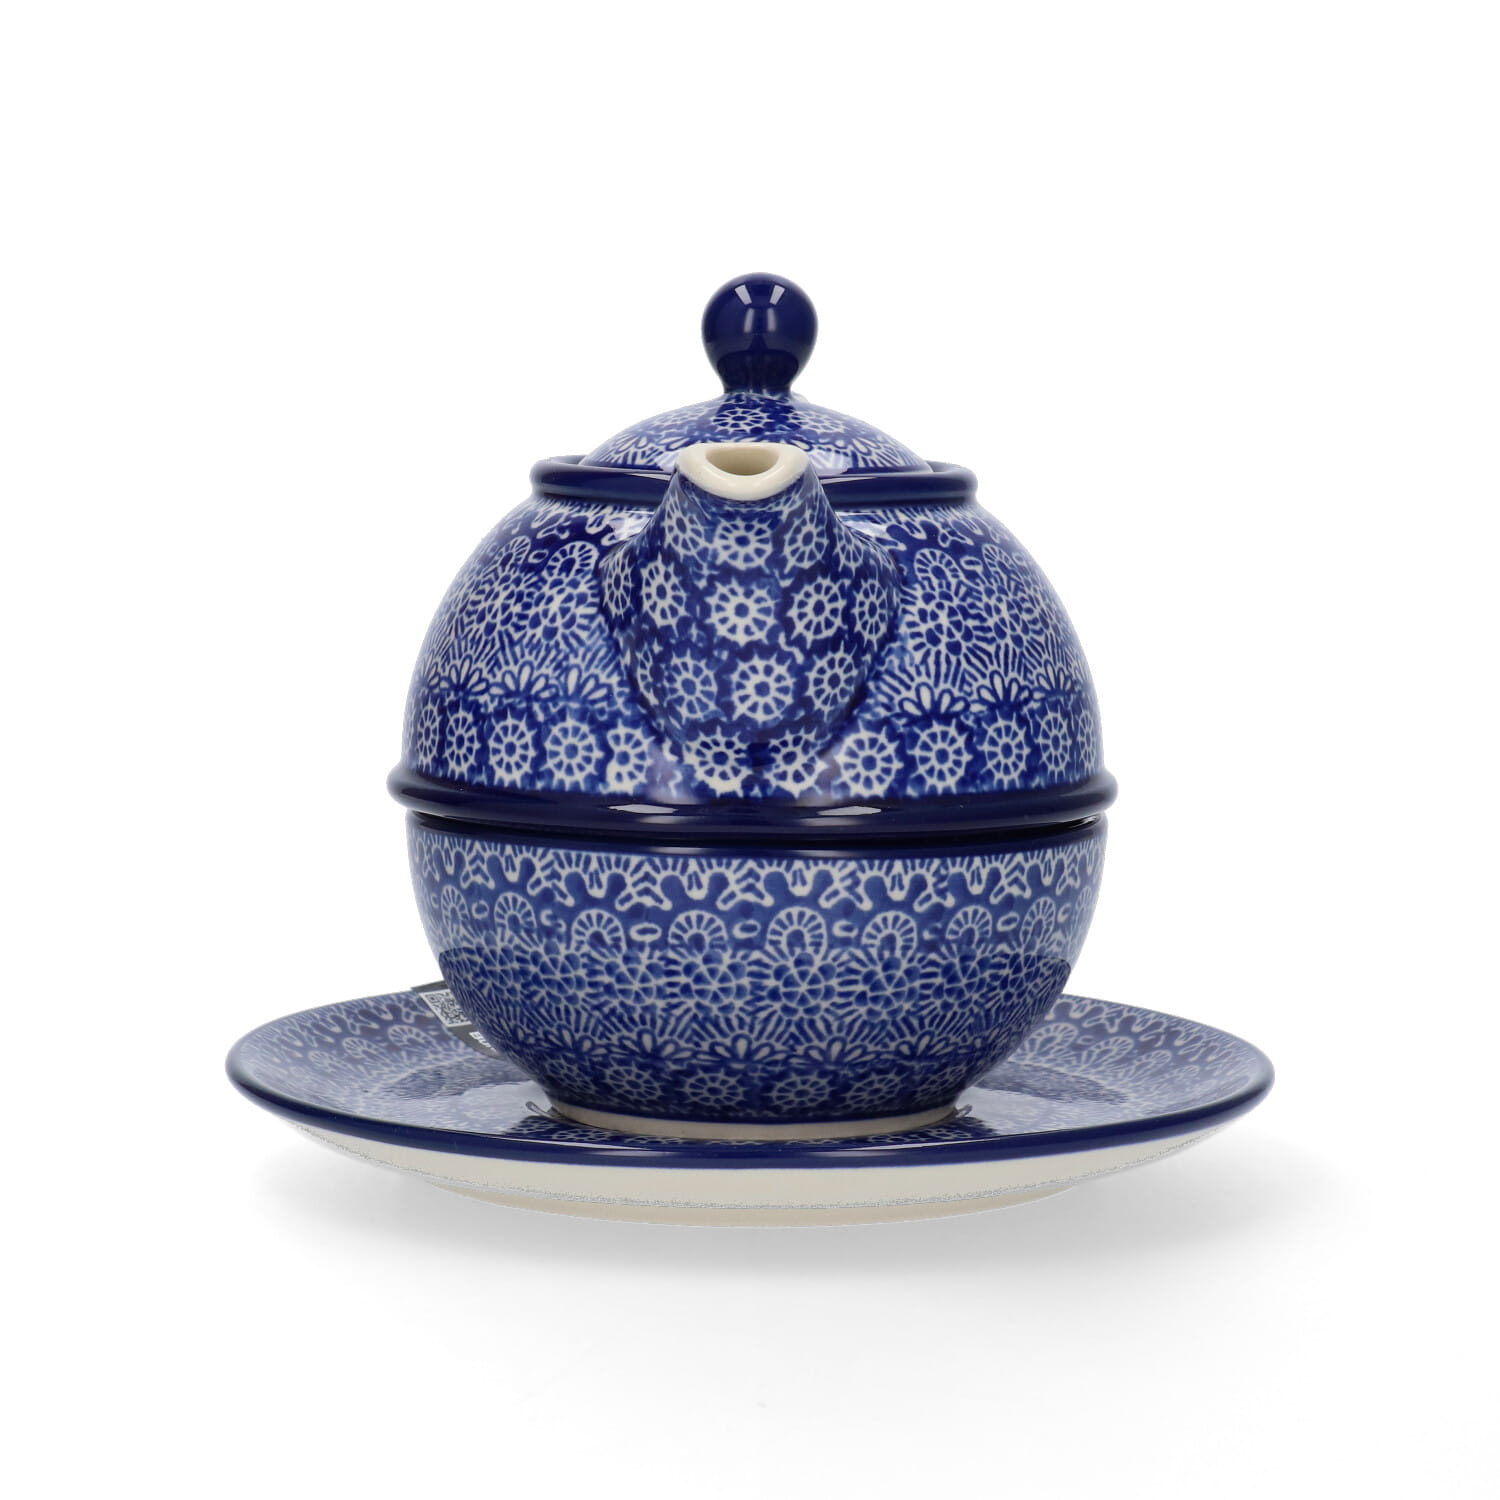 Bunzlau Castle Keramik Set Tea for One 600 ml - Lace